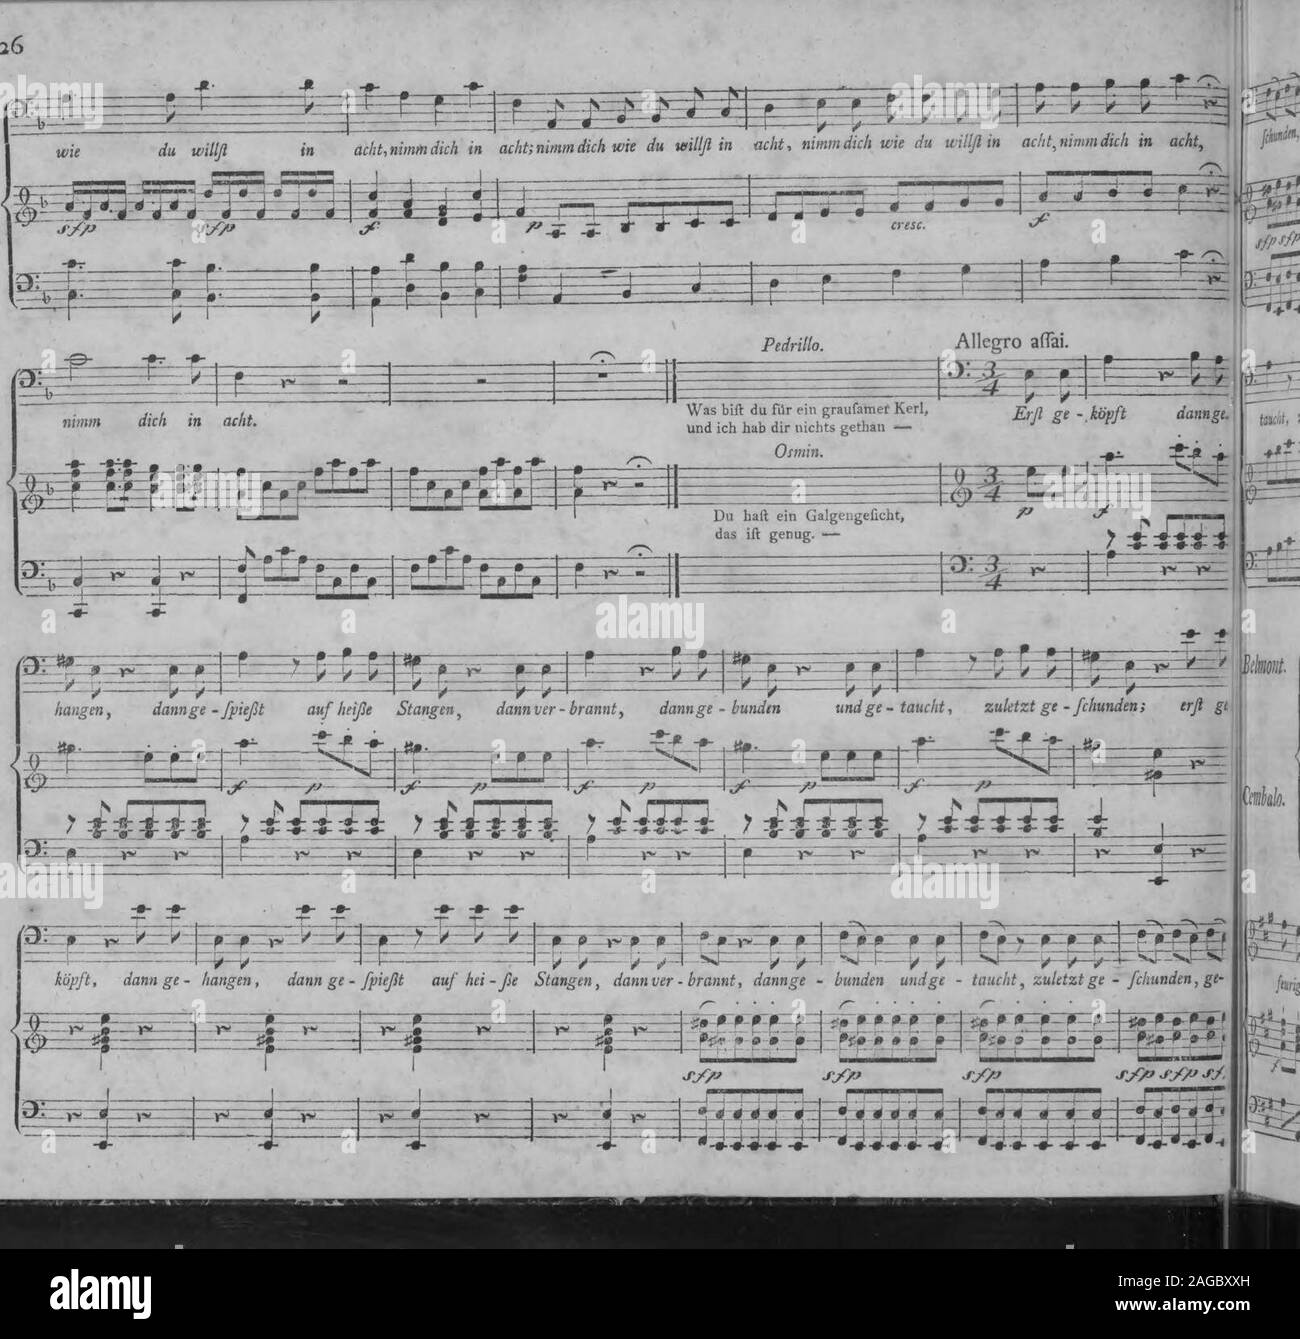 . Die Entfuhrung aus dem Serail : ein komisches Singspiel in drey Aufzugen (1796). Mozart, Entführ. as dem Serail. mra^. m^^z^m^ fchunden, ge - fchunden; erfl ge - köpft, dann ge - hangen, dann ge -fpiefst auf heiße Stangen, dannver-brannt, dannge - bunden undge-  r    ^  ^t*T*^ , rf fl - Stock Photo